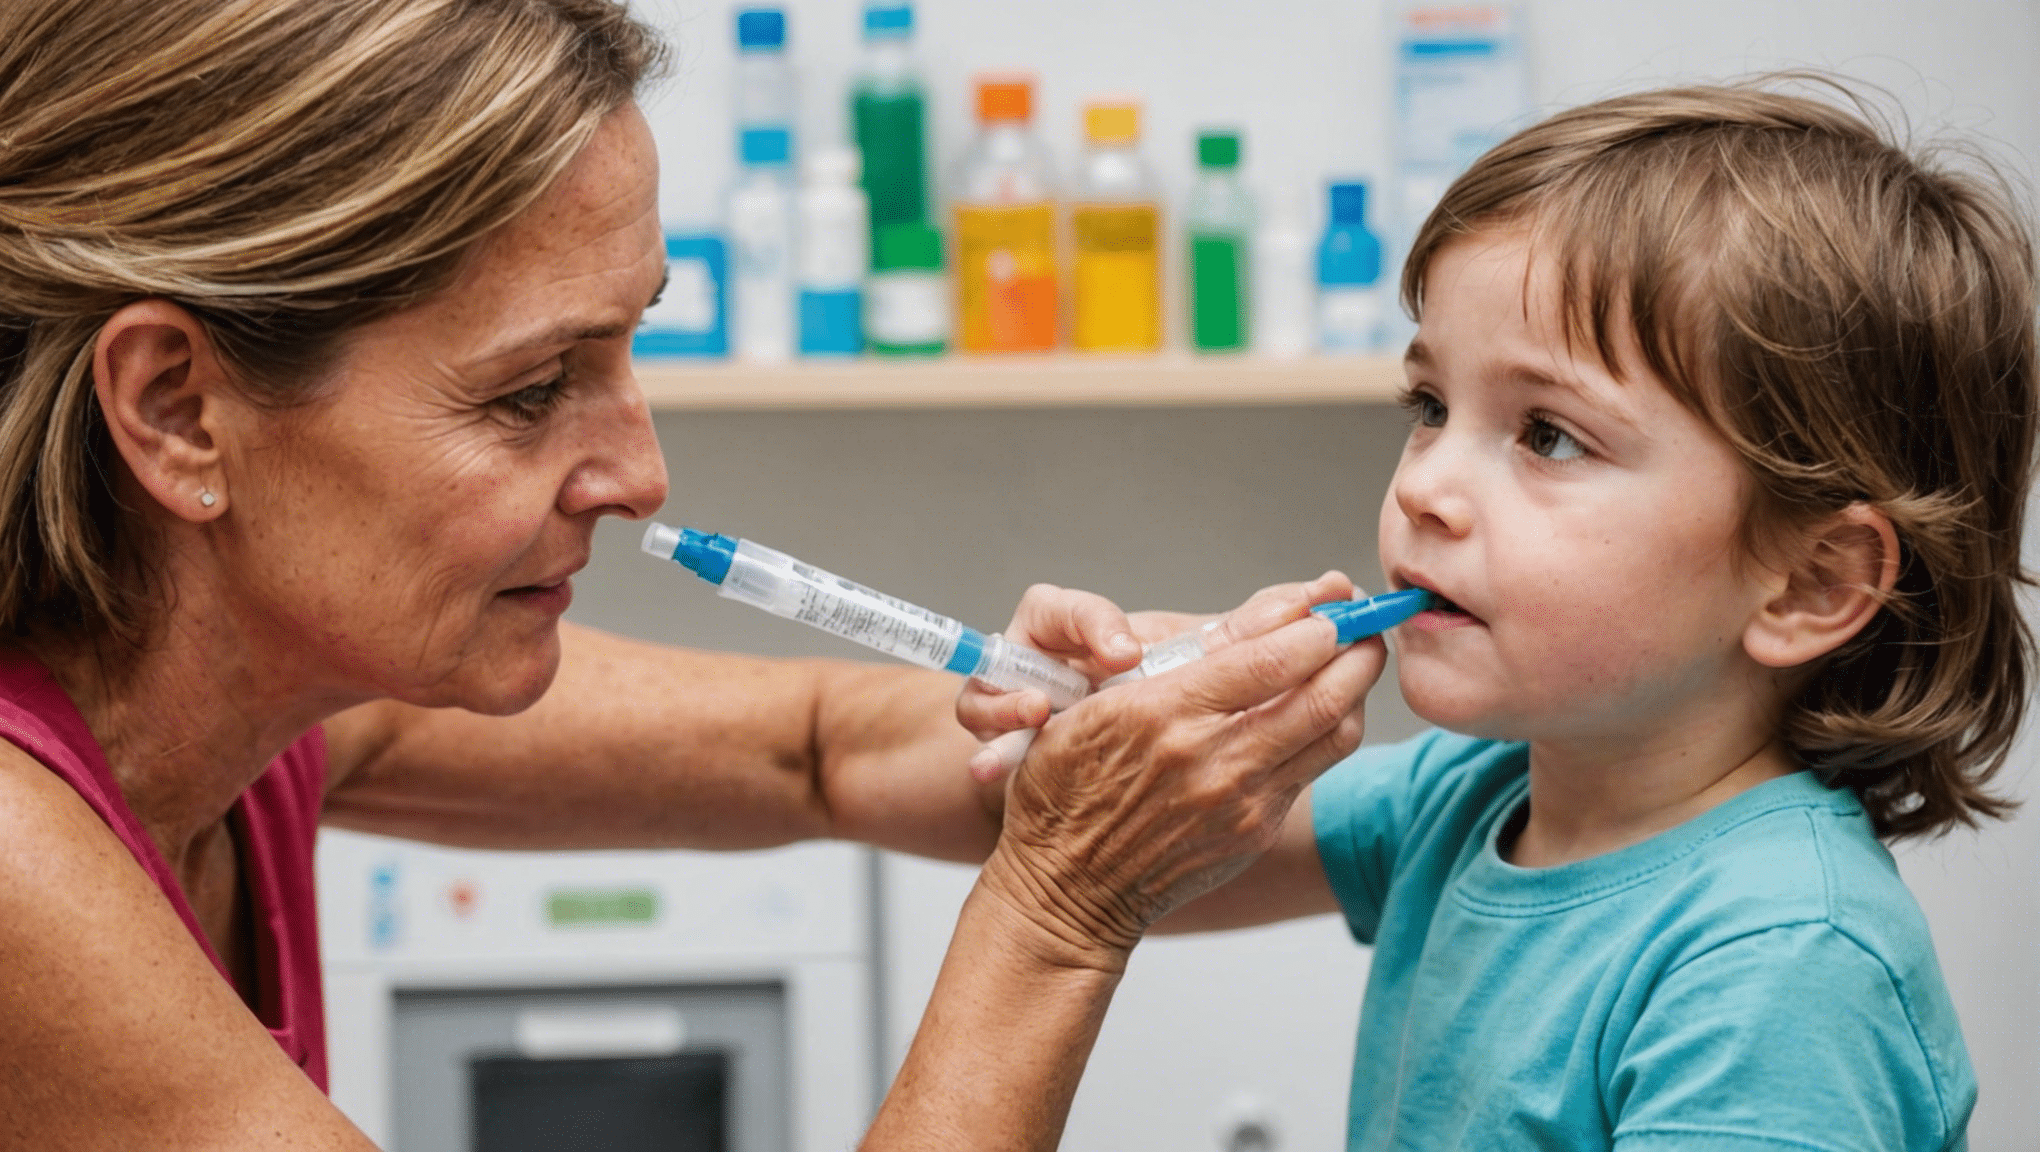 découvrez l'importance cruciale de l'immunisation et des vaccins pour la santé et le bien-être, et comment ils protègent contre les maladies.